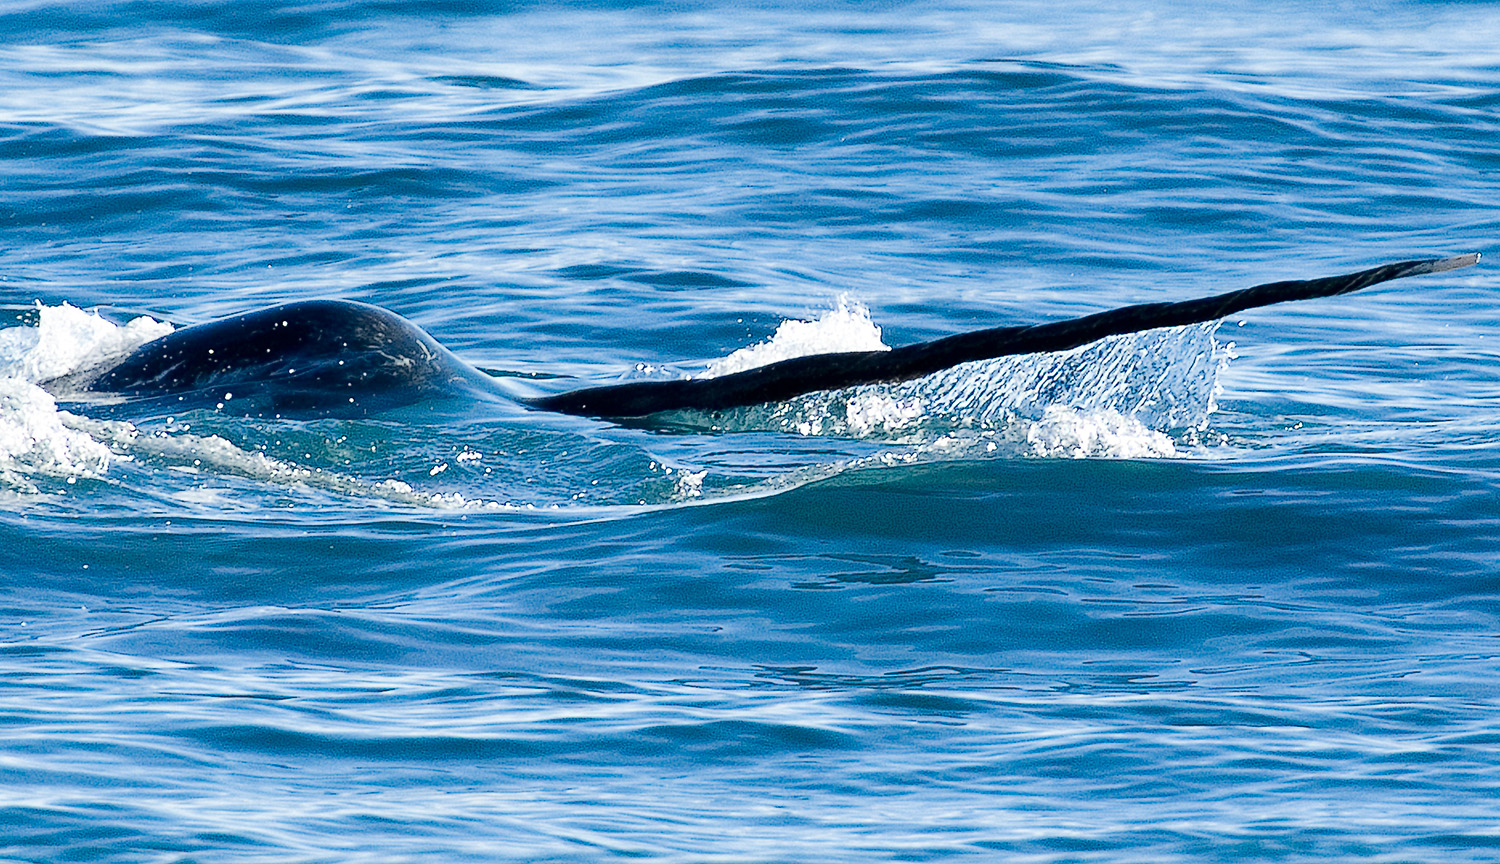 Fotografía de la parte delantera de un narval nadando en el agua, con su largo colmillo claramente visible.